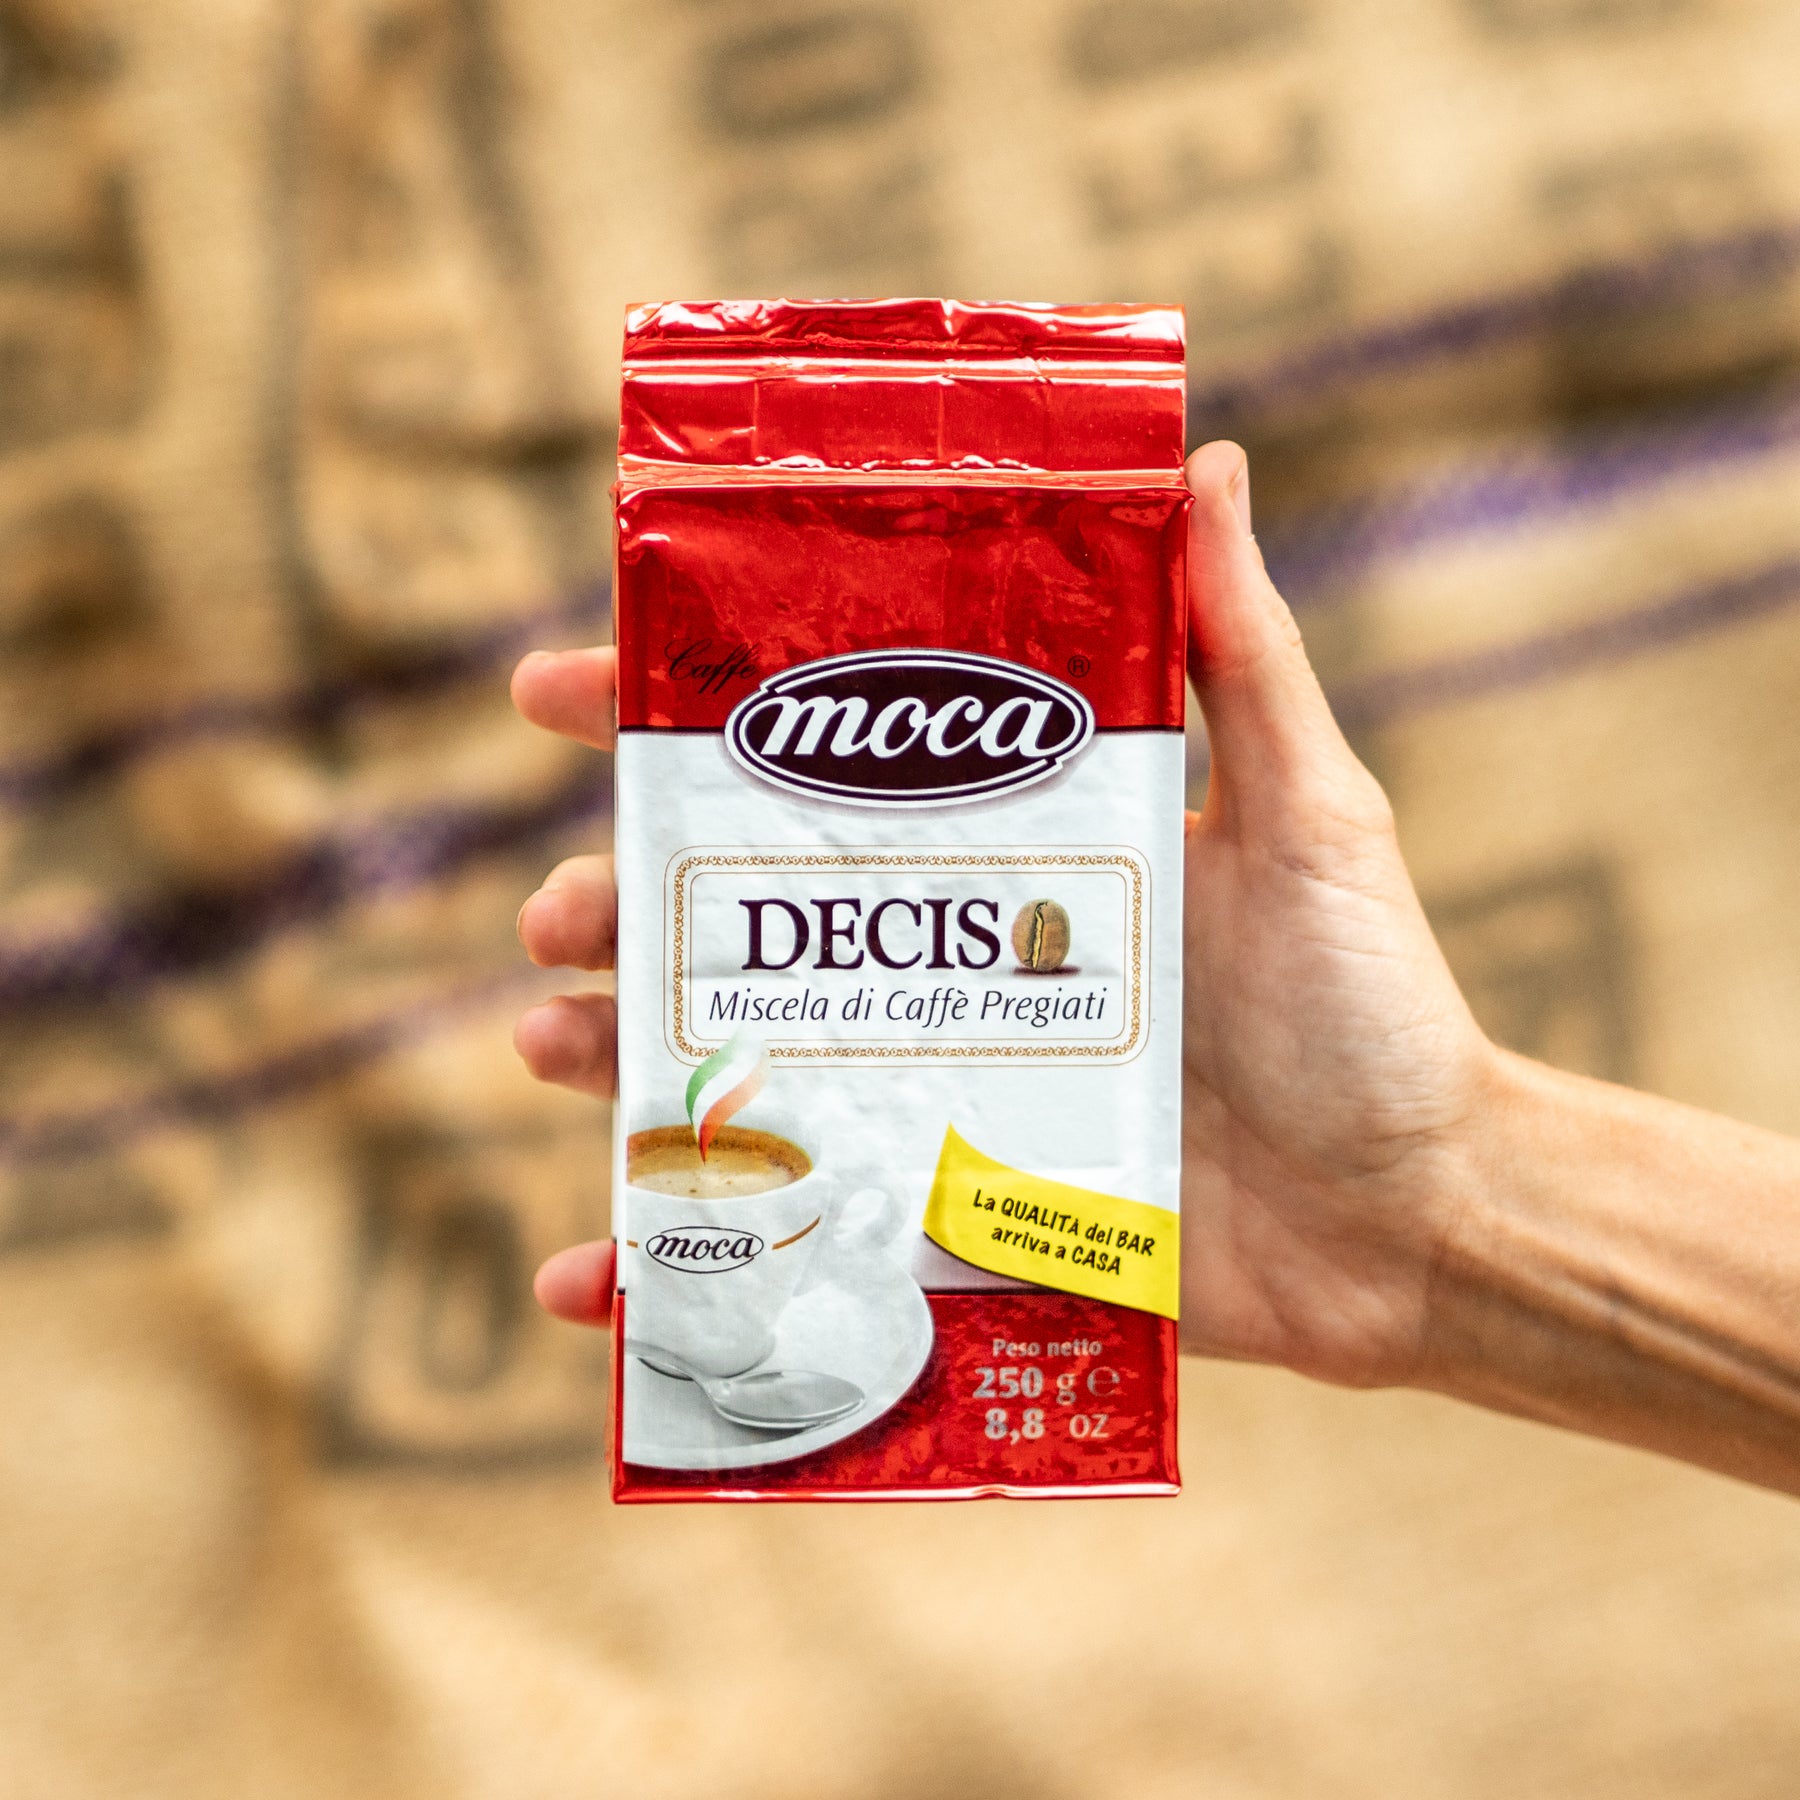 摩卡摩卡咖啡粉 1 公斤 - Deciso - 4 个真空包装和 250 克保鲜袋